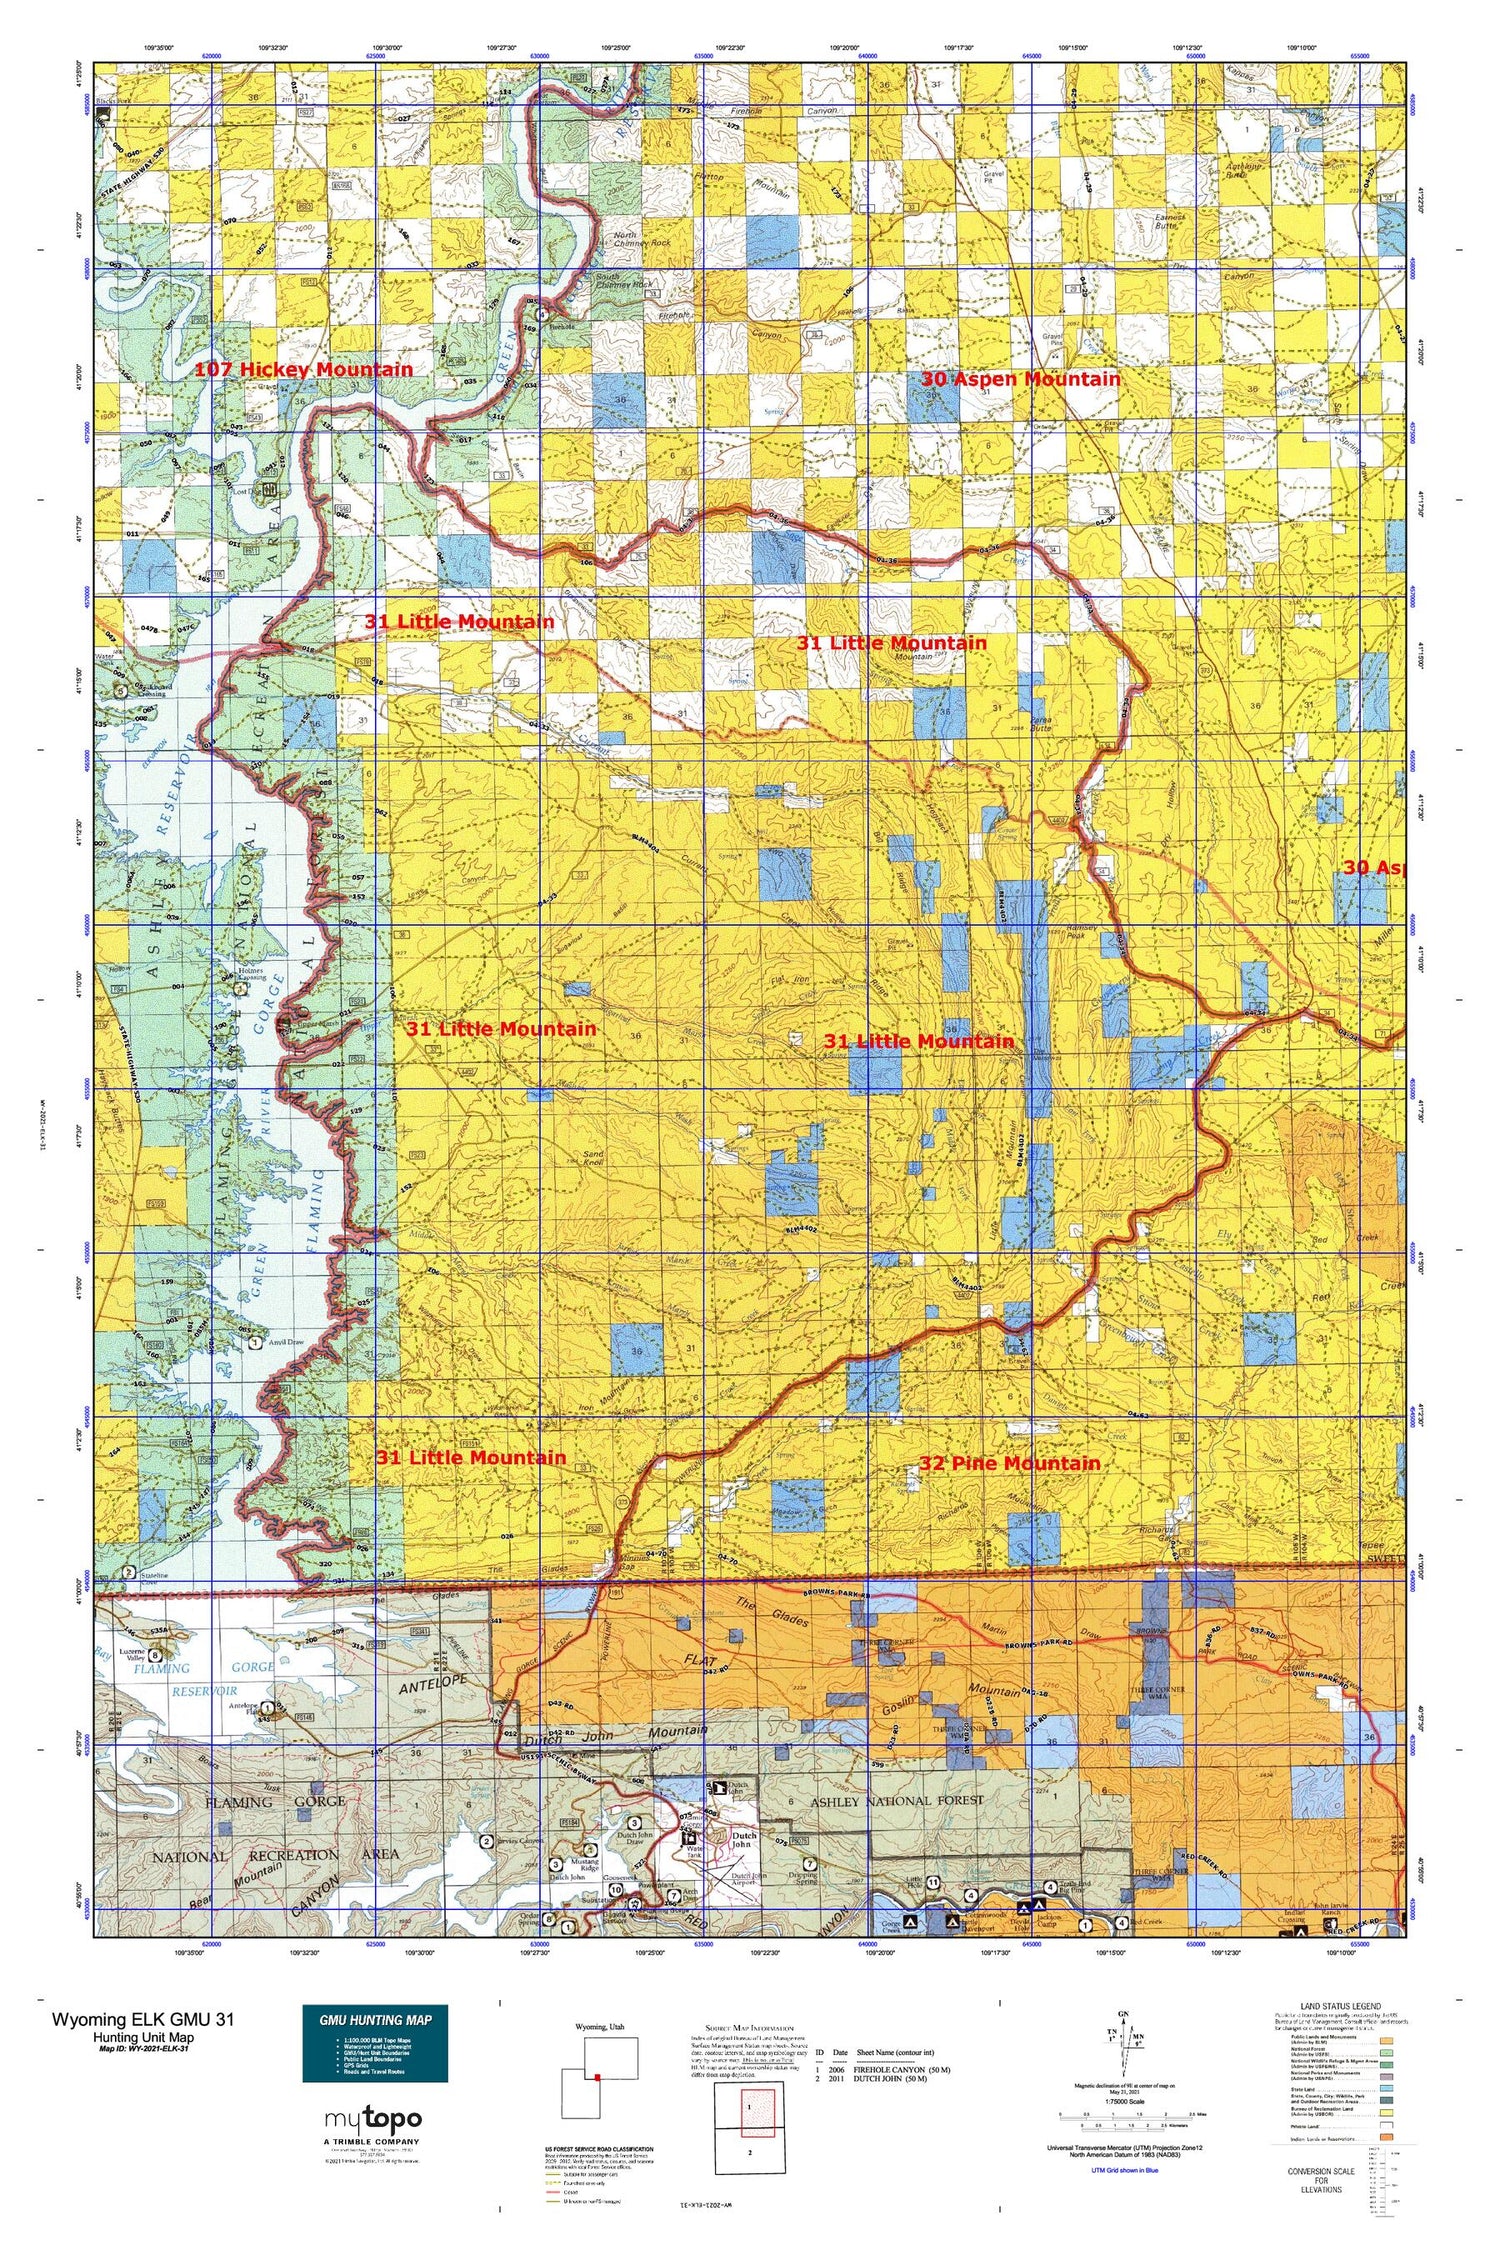 Wyoming Elk GMU 31 Map Image